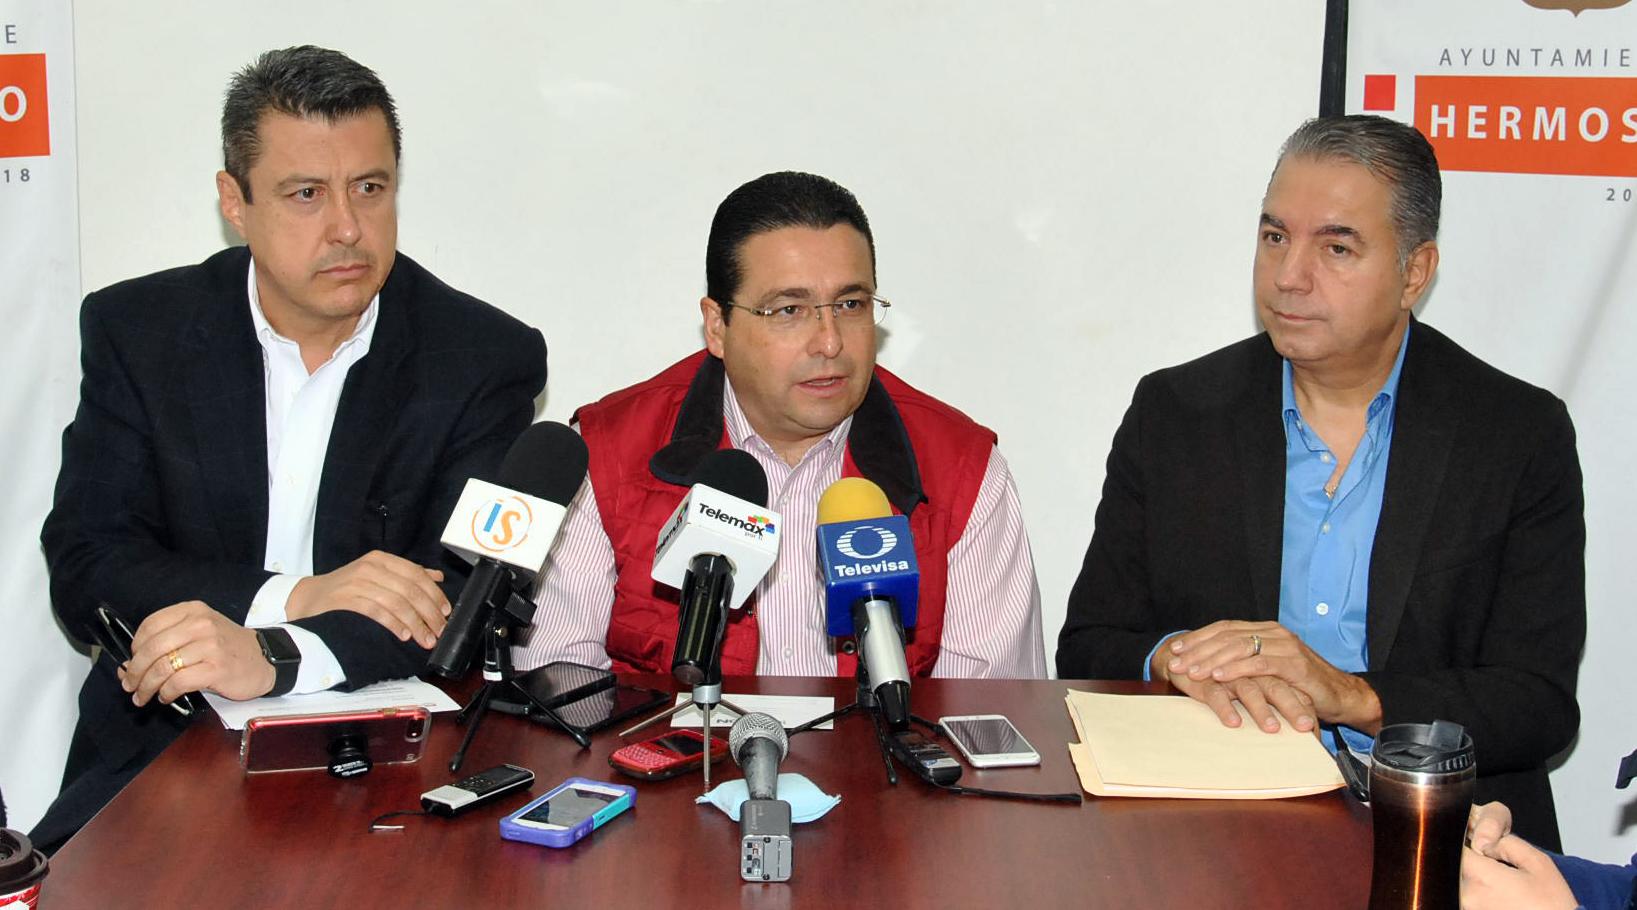 Ayuntamiento de Hermosillo y 1Mission construirán 50 casas más en Miguel  Alemán